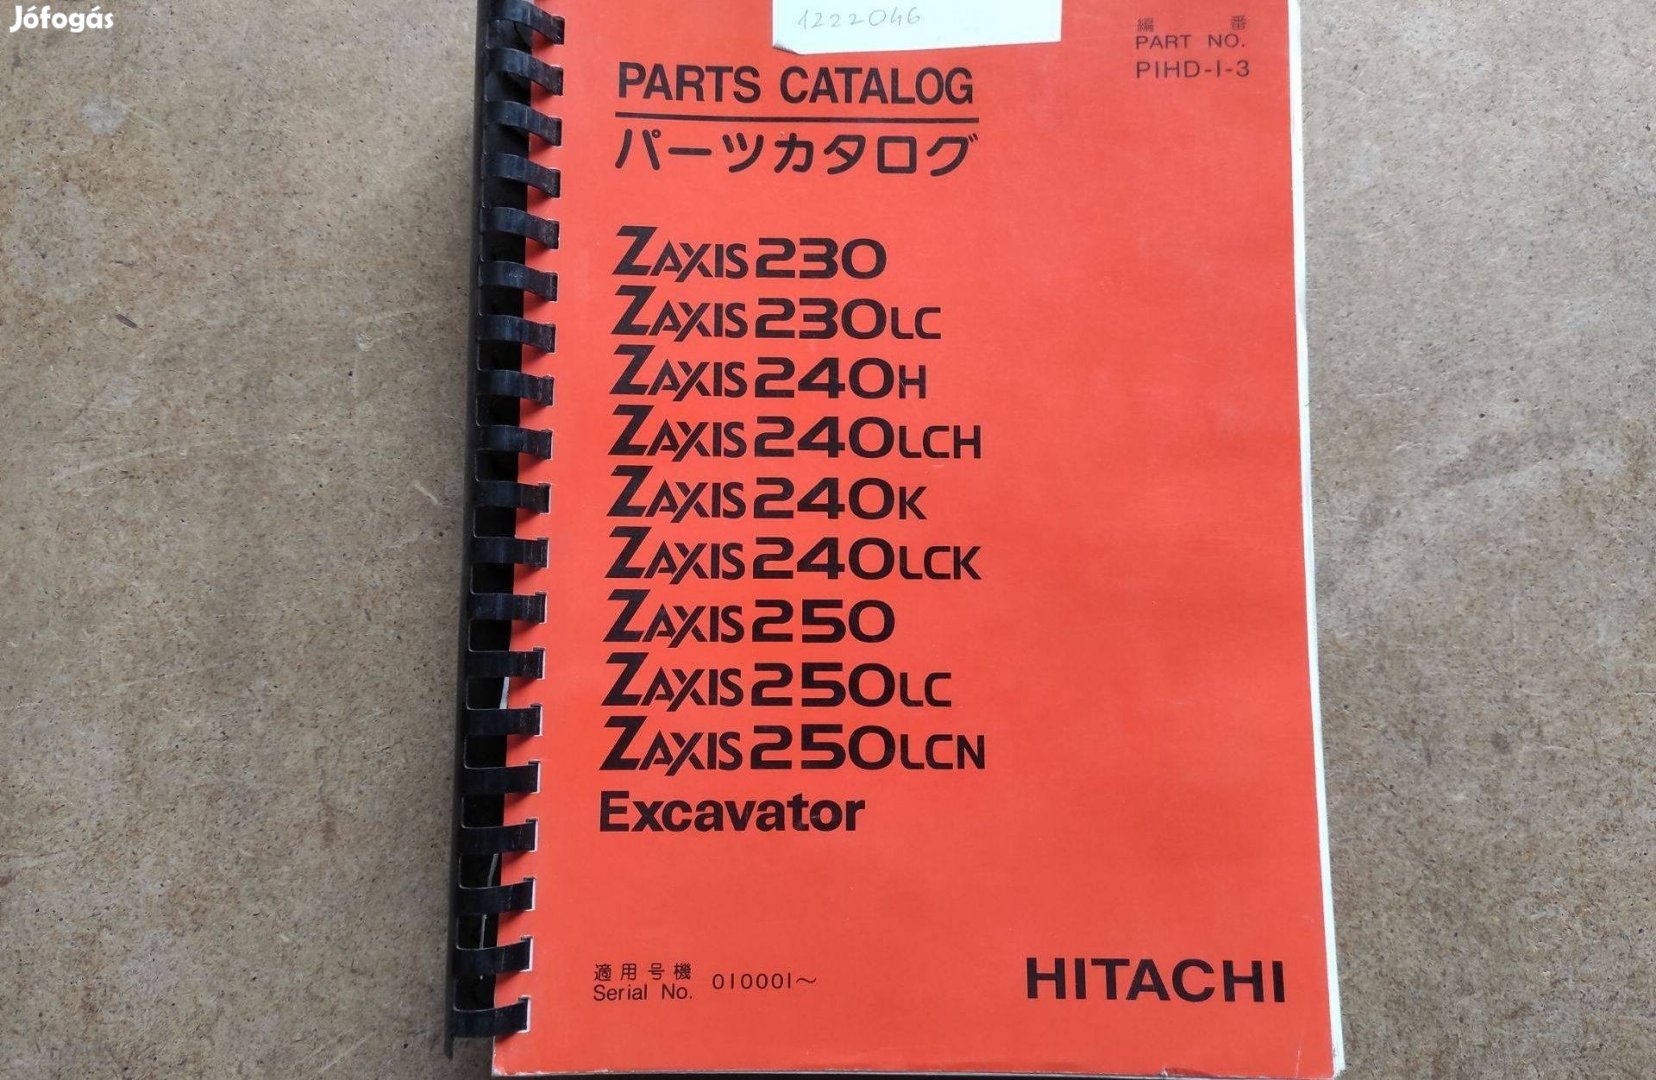 Hitachi Zaxis 230, 240, 250 kotró alkatrészkatalógus